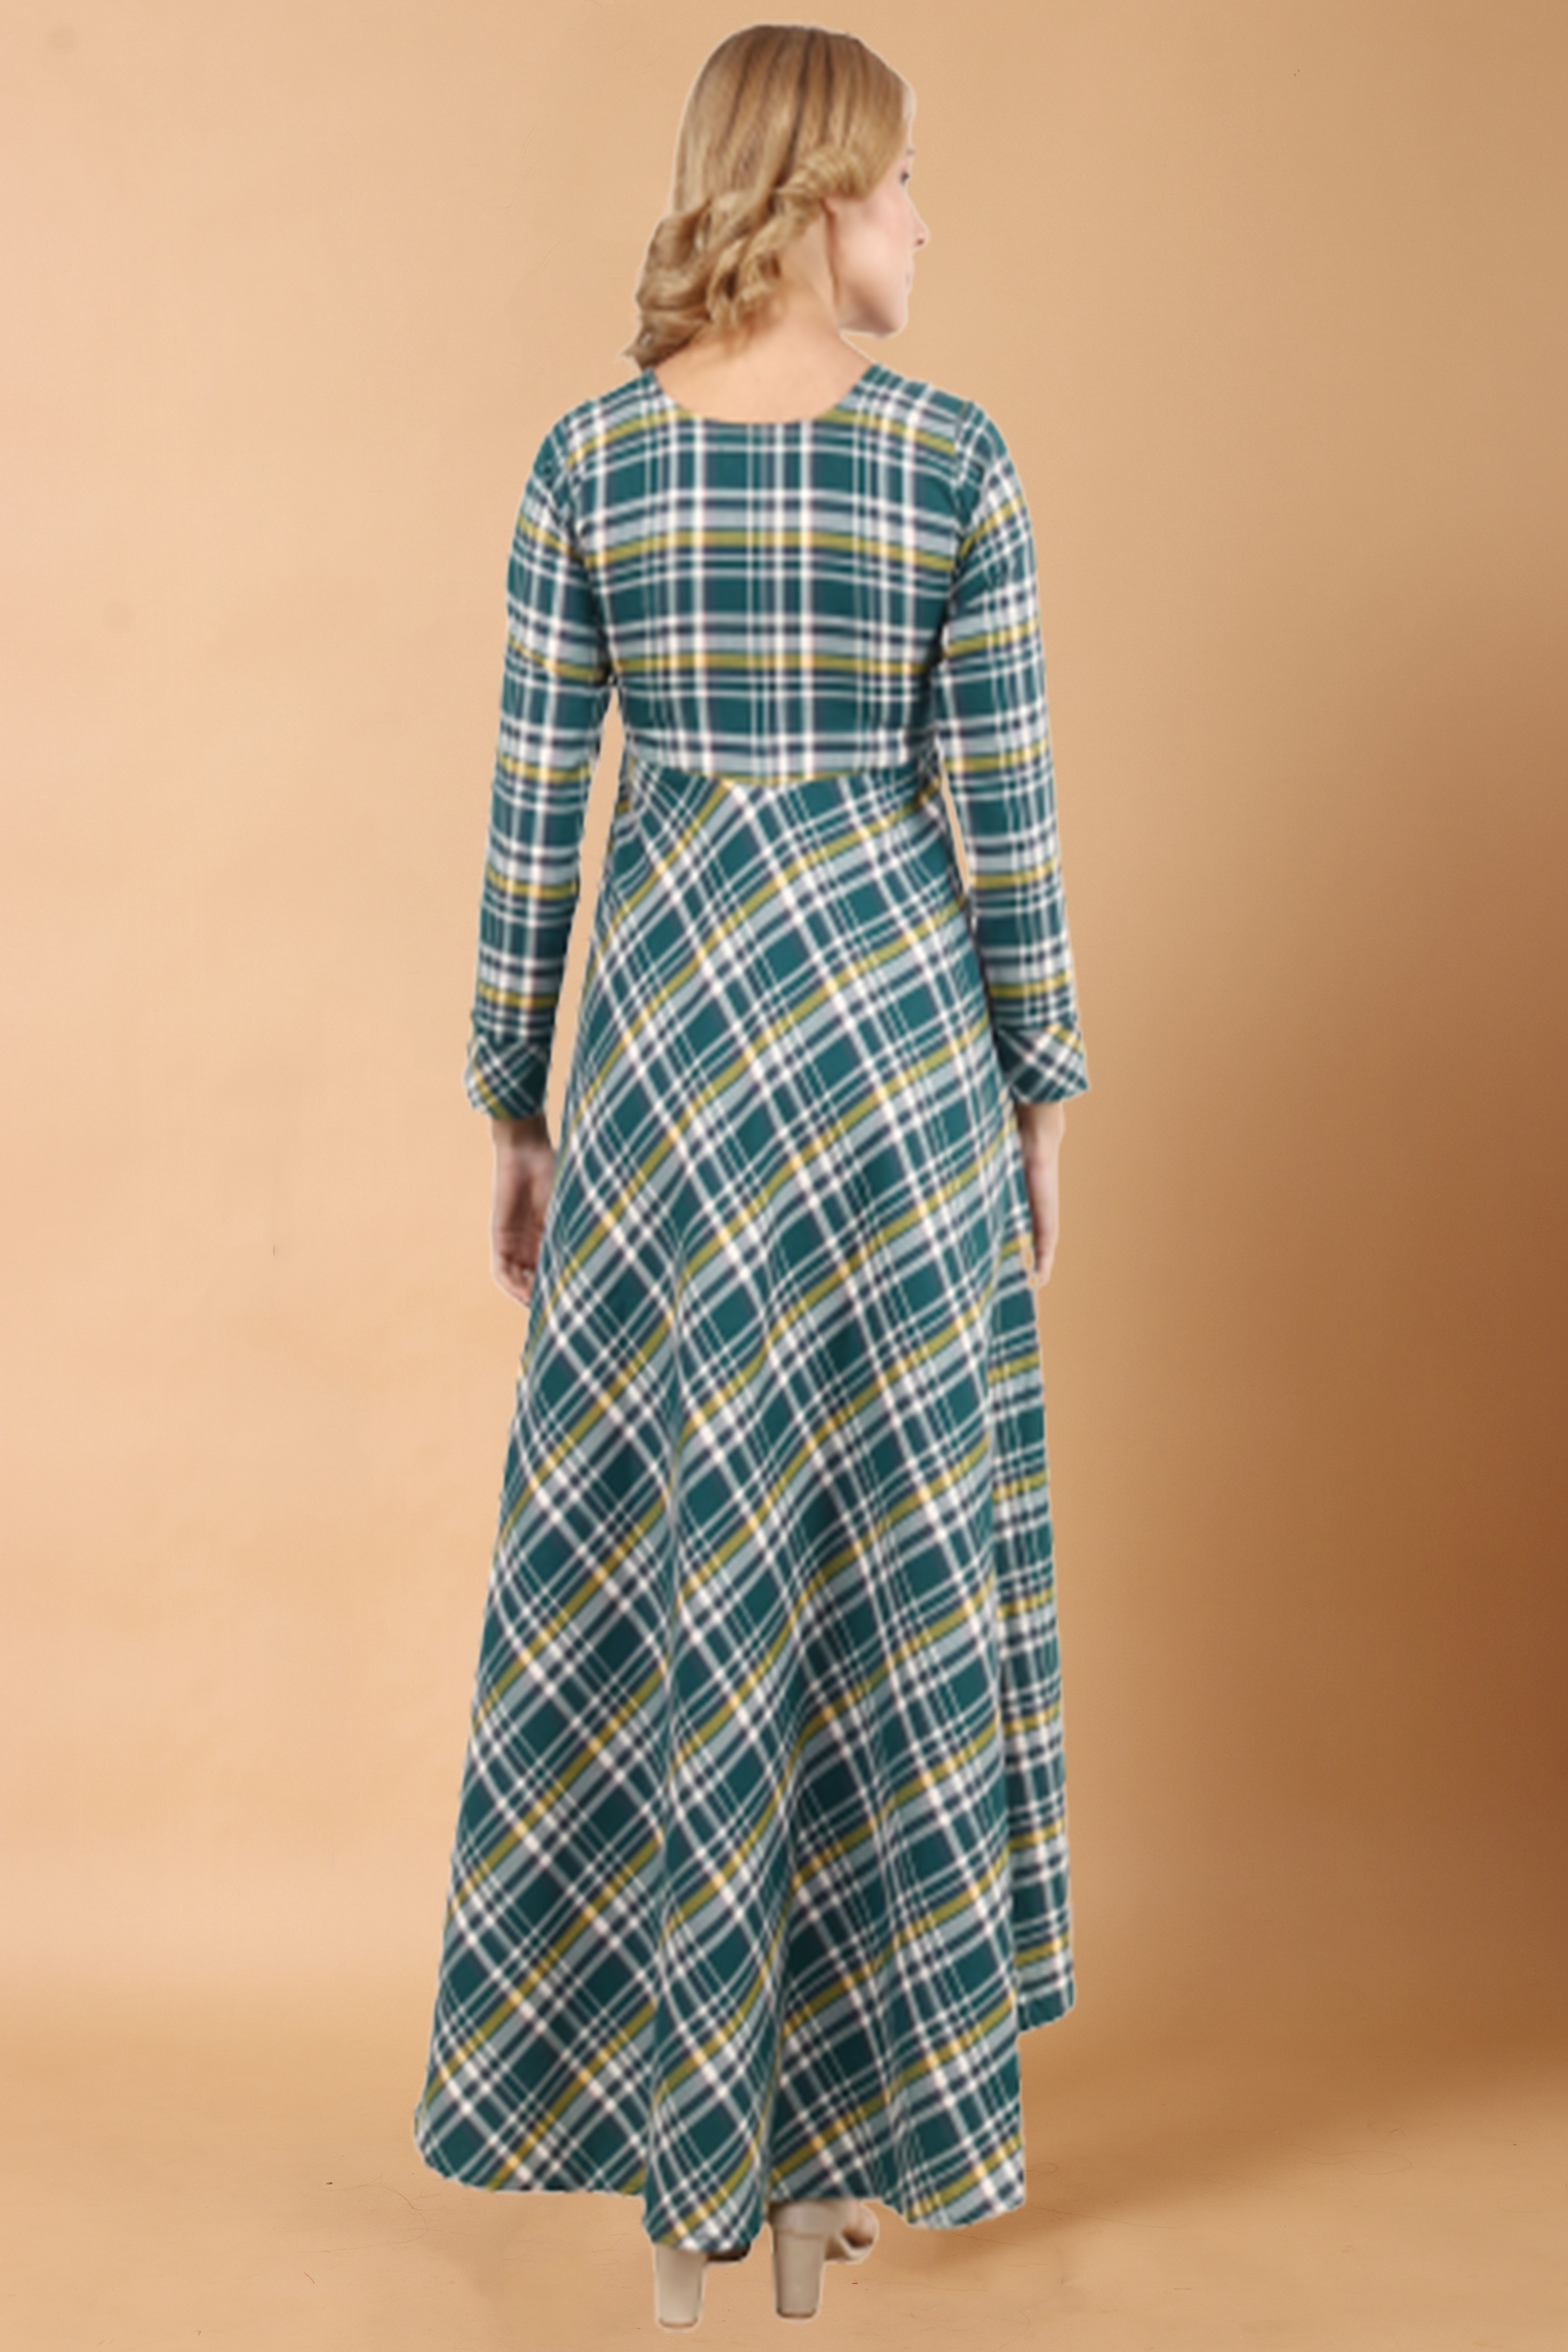 Woolen Dresses for Women - Buy Woolen Dresses for Ladies Online in India